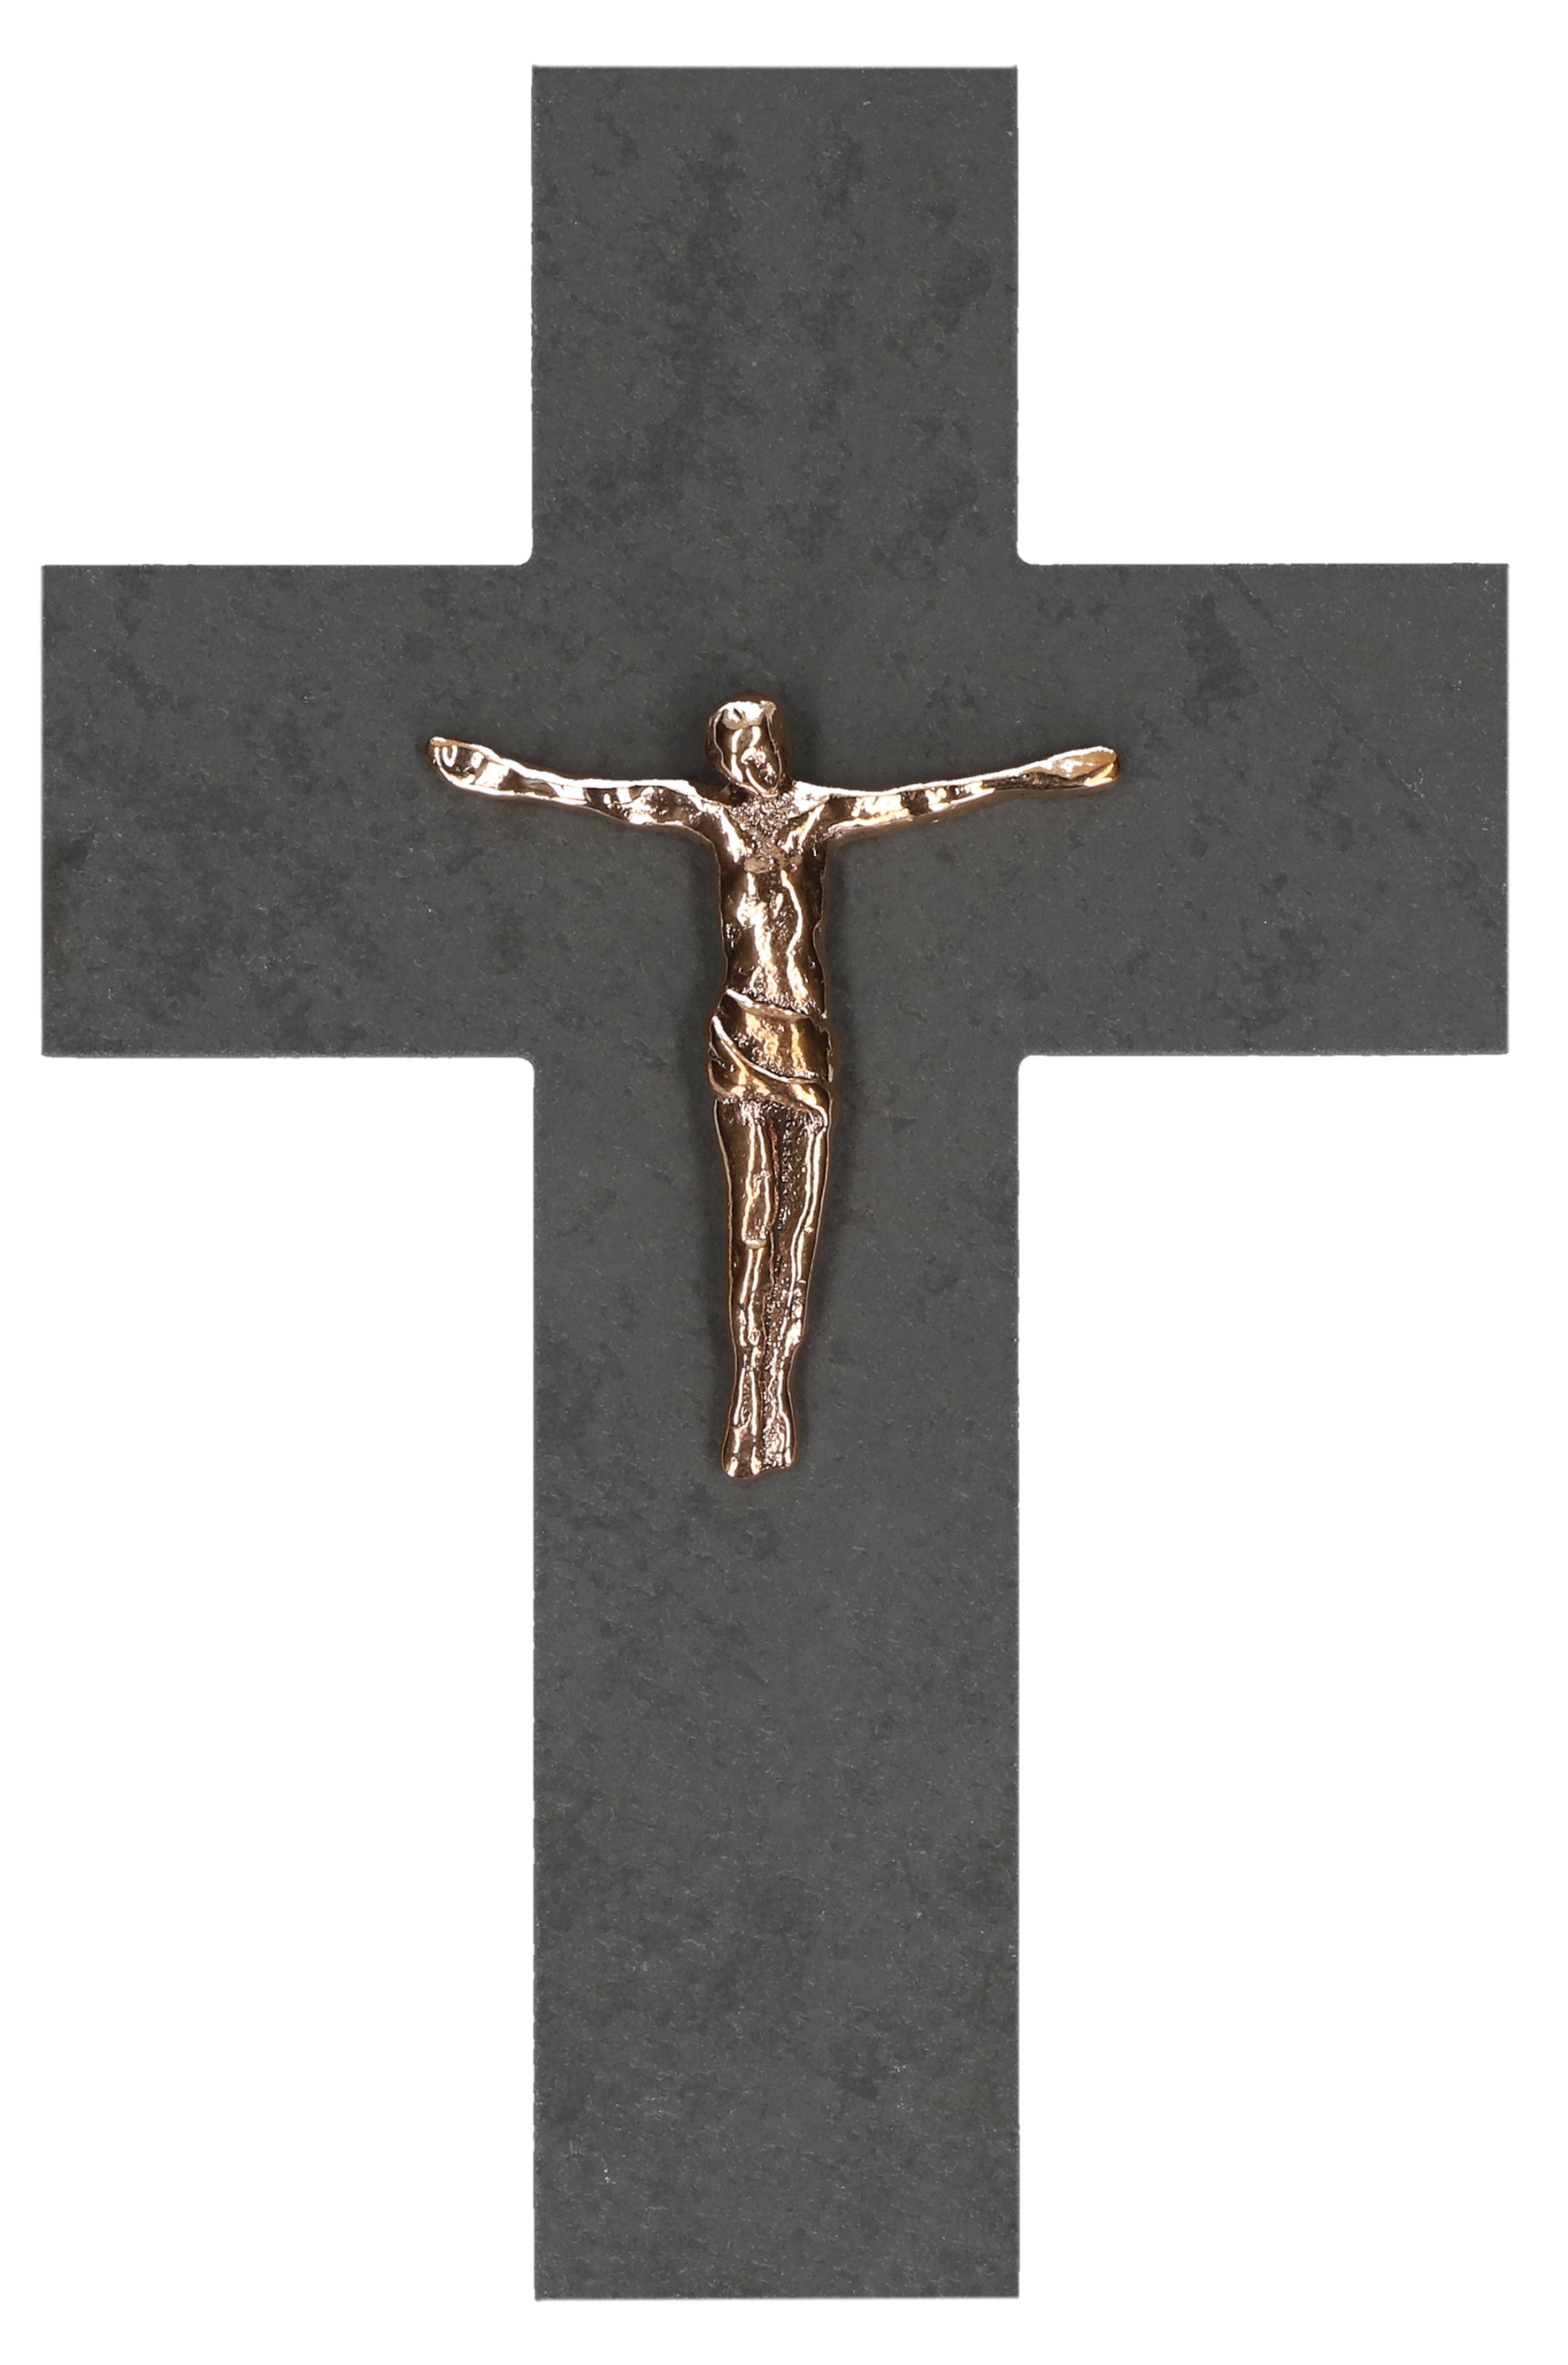 Schieferkreuz mit Bronzekorpus